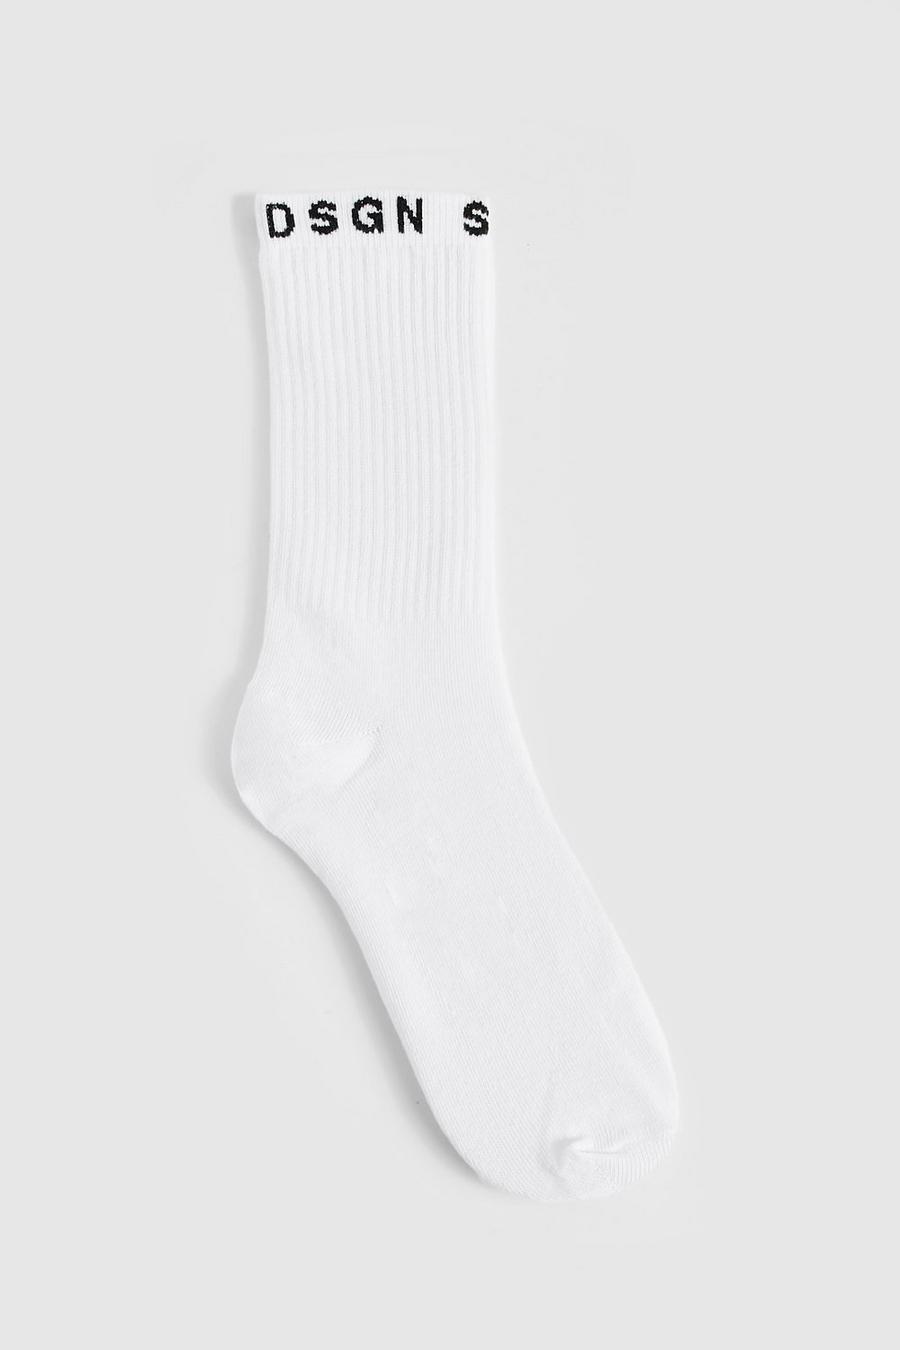 Dsgn Studio Basic Sport-Socken, White